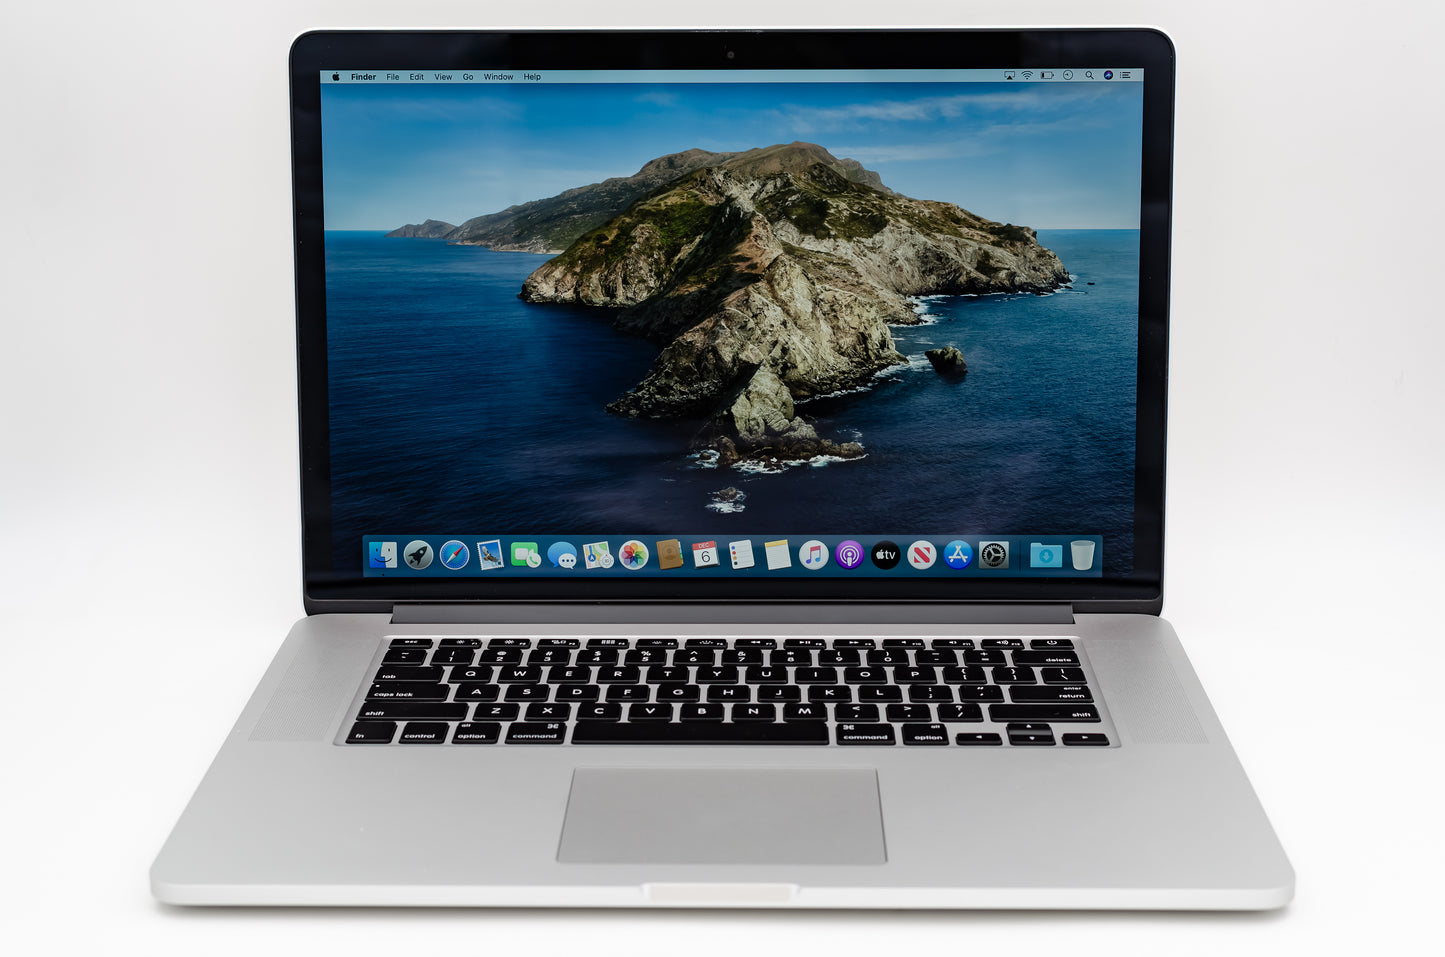 apple-mid-2012-15.4-inch-macbook-pro-a1286-aluminum-qci7 - 2.3ghz processor, 4gb ram, gt 650m - 1gb gpu-md103ll/a-1